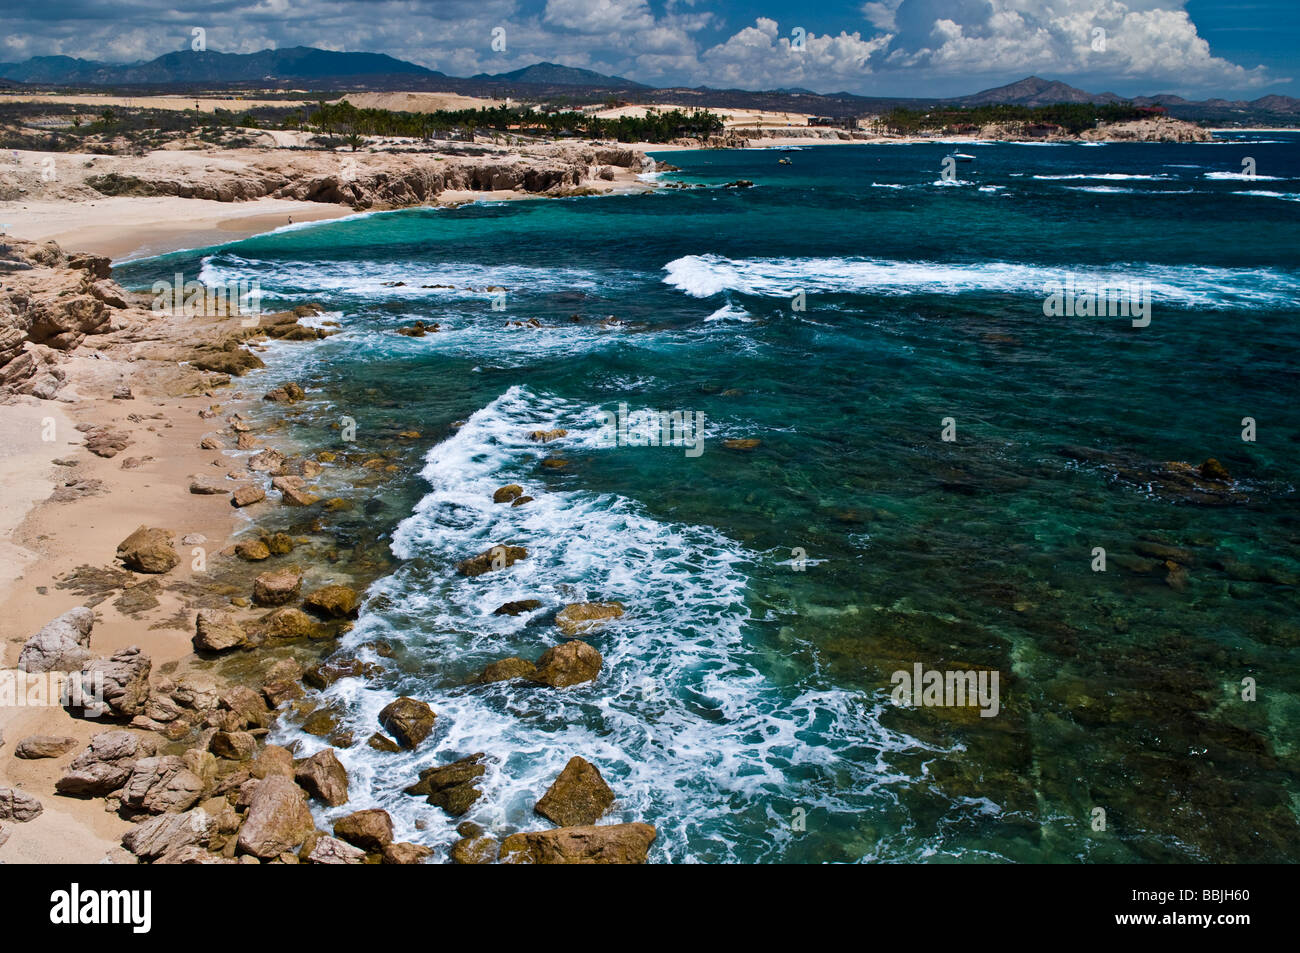 Chileno Beach, San Jose del Cabo, Baja California Sur, Mexico Stock Photo